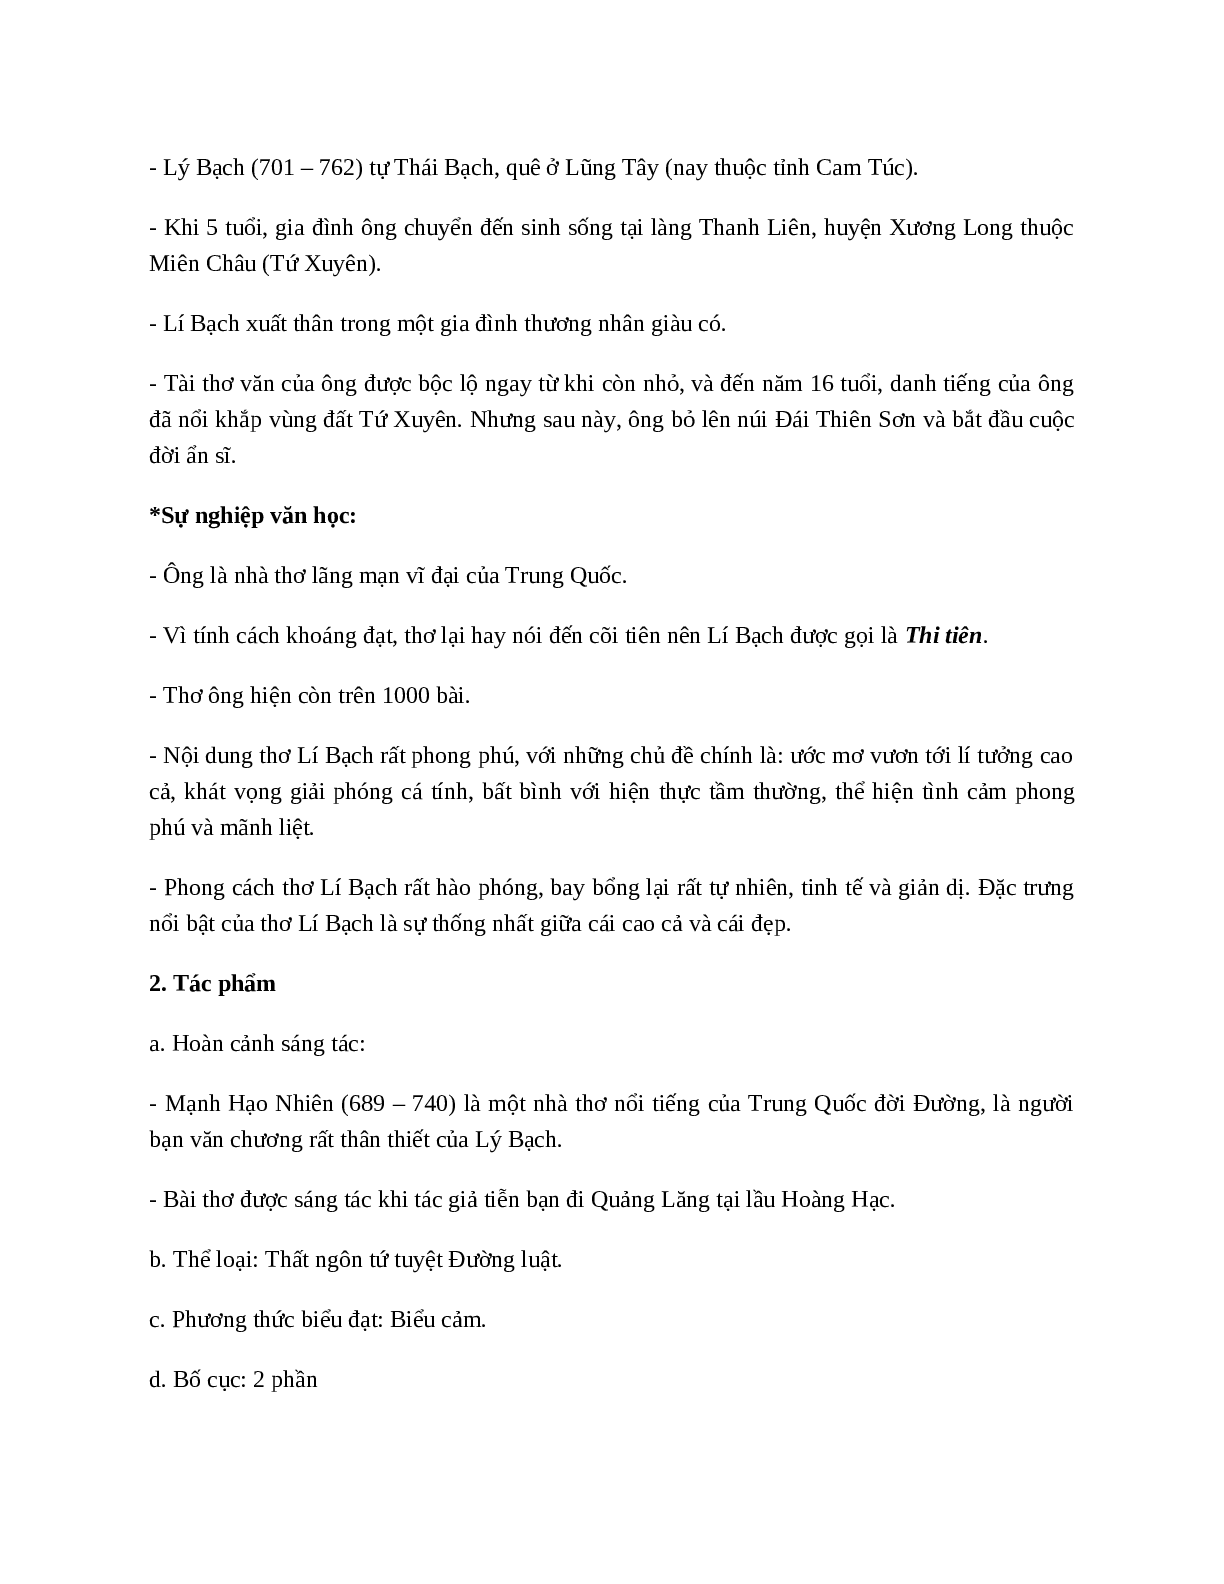 Tại lầu Hoàng Hạc tiễn Mạnh Hạo Nhiên đi Quảng Lăng - Tác giả tác phẩm - Ngữ văn lớp 10 (trang 2)